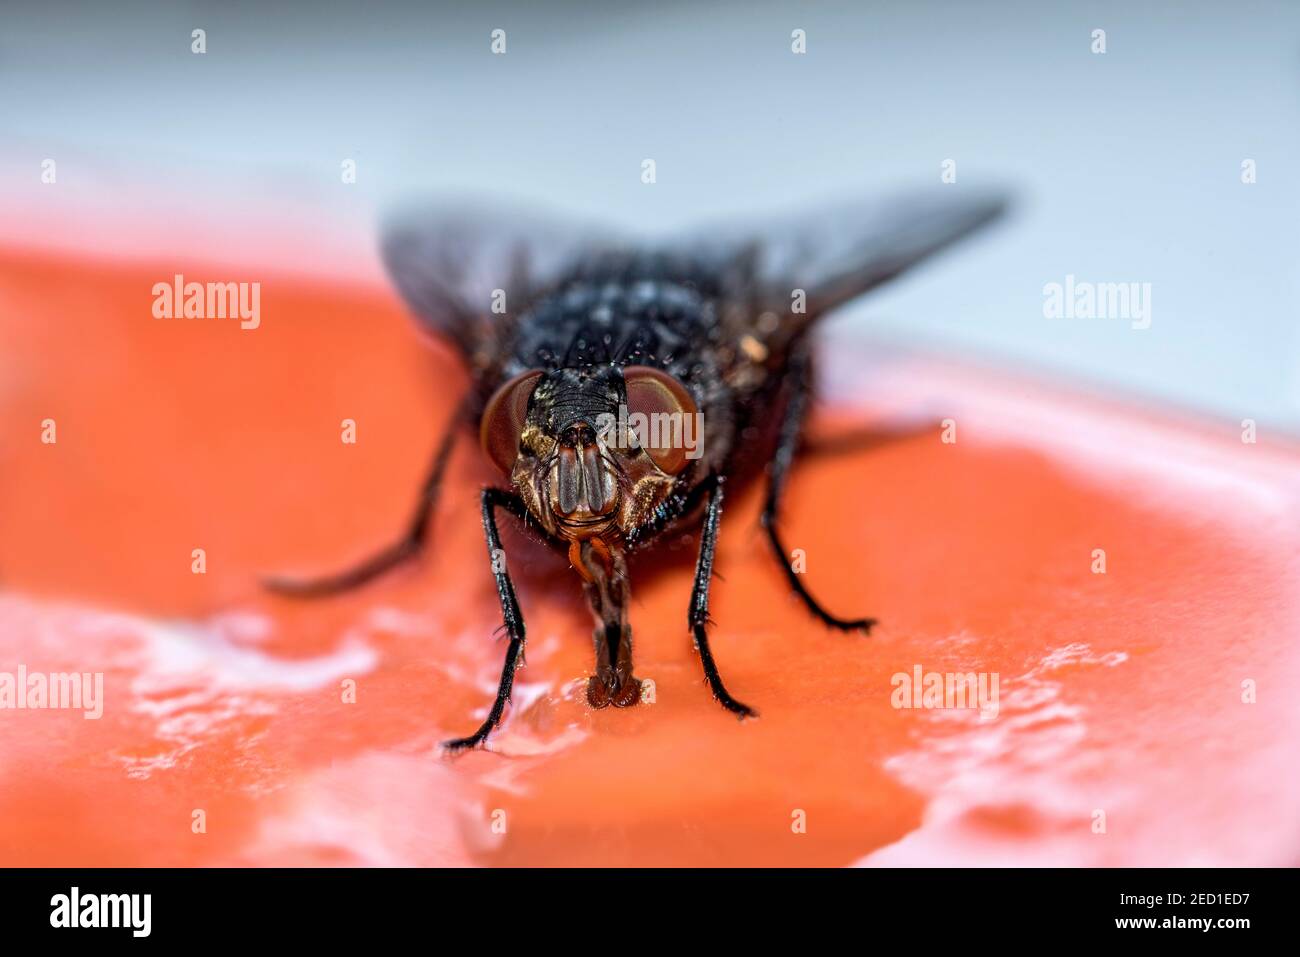 Mouche à mouches (Calliphoridae) se nourrissant des restes de nourriture sur une assiette, Hesse, Allemagne Banque D'Images